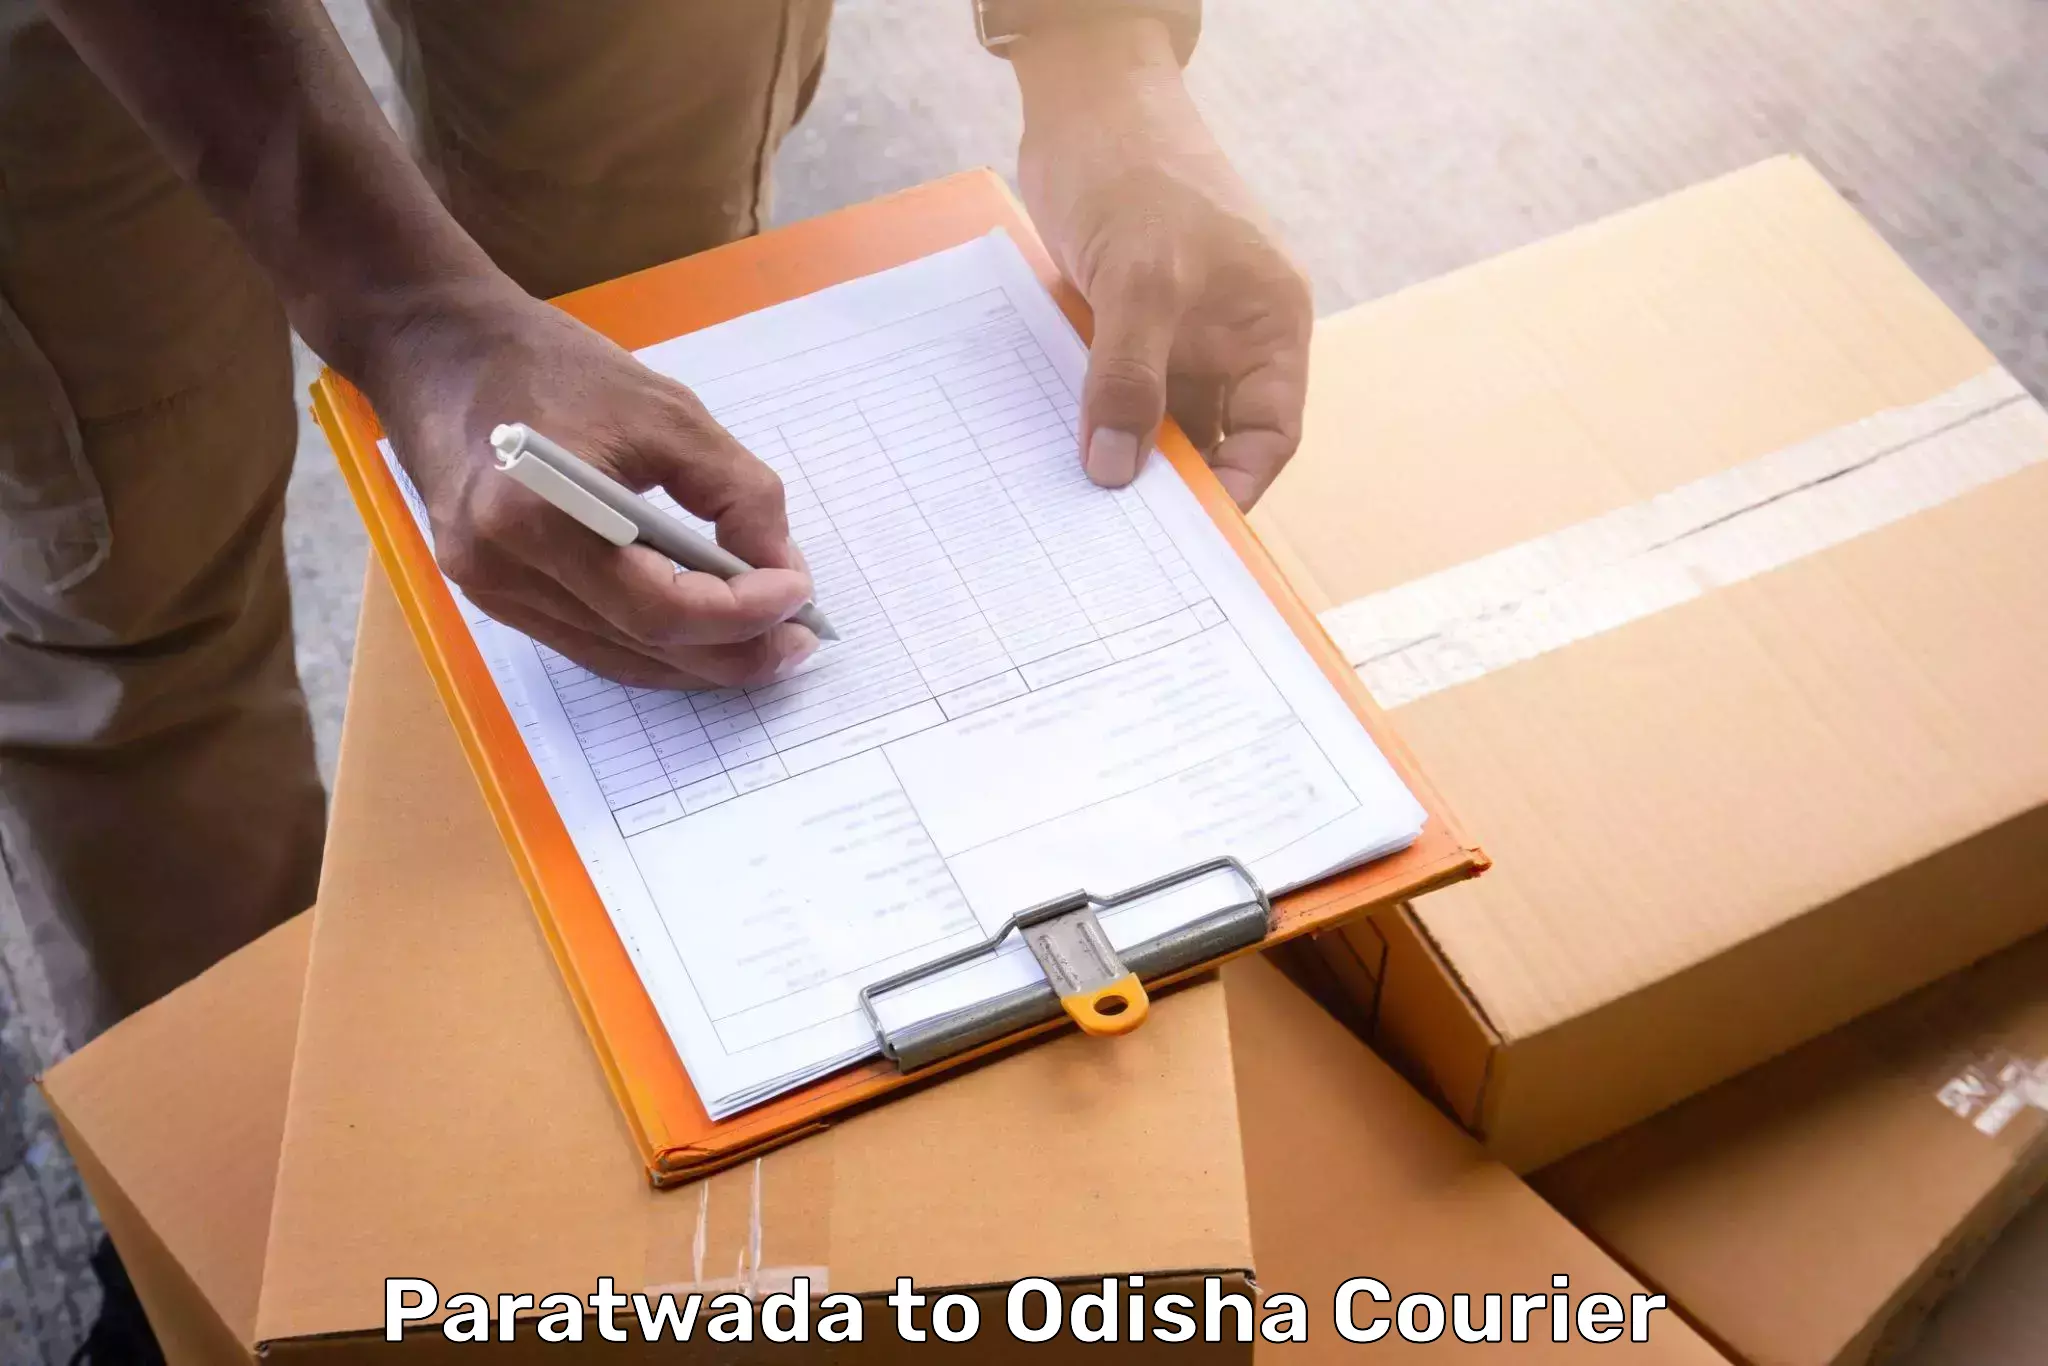 Luggage shipment specialists Paratwada to Tihidi